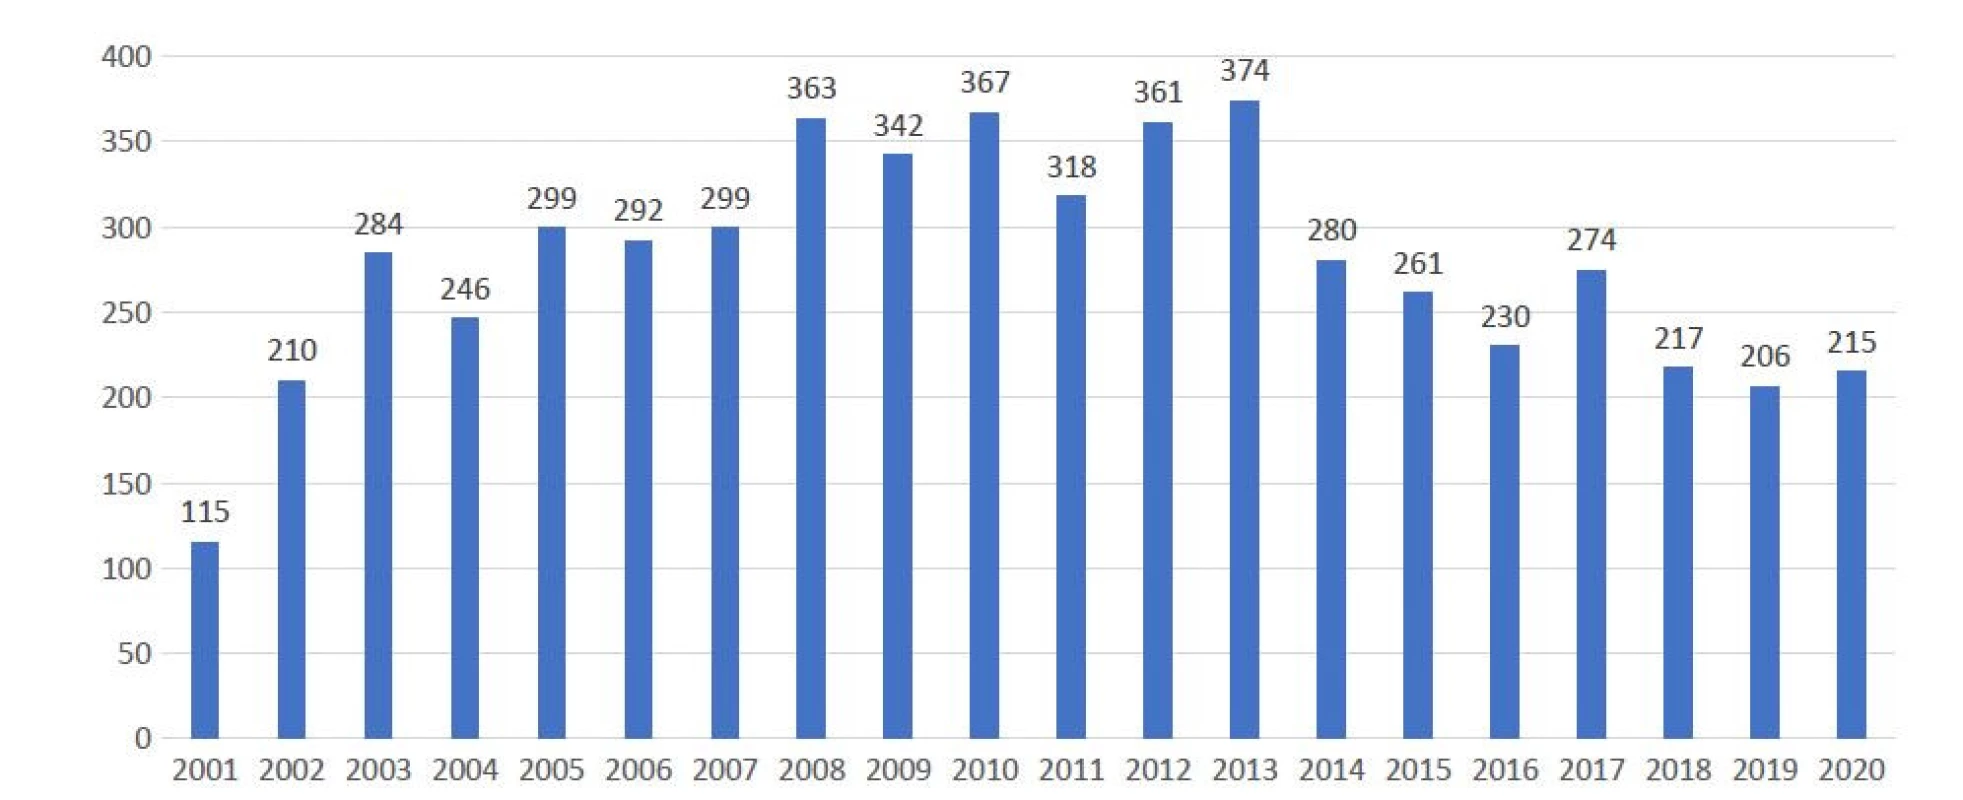 Počty řešených případů v jednotlivých letech od roku 2001